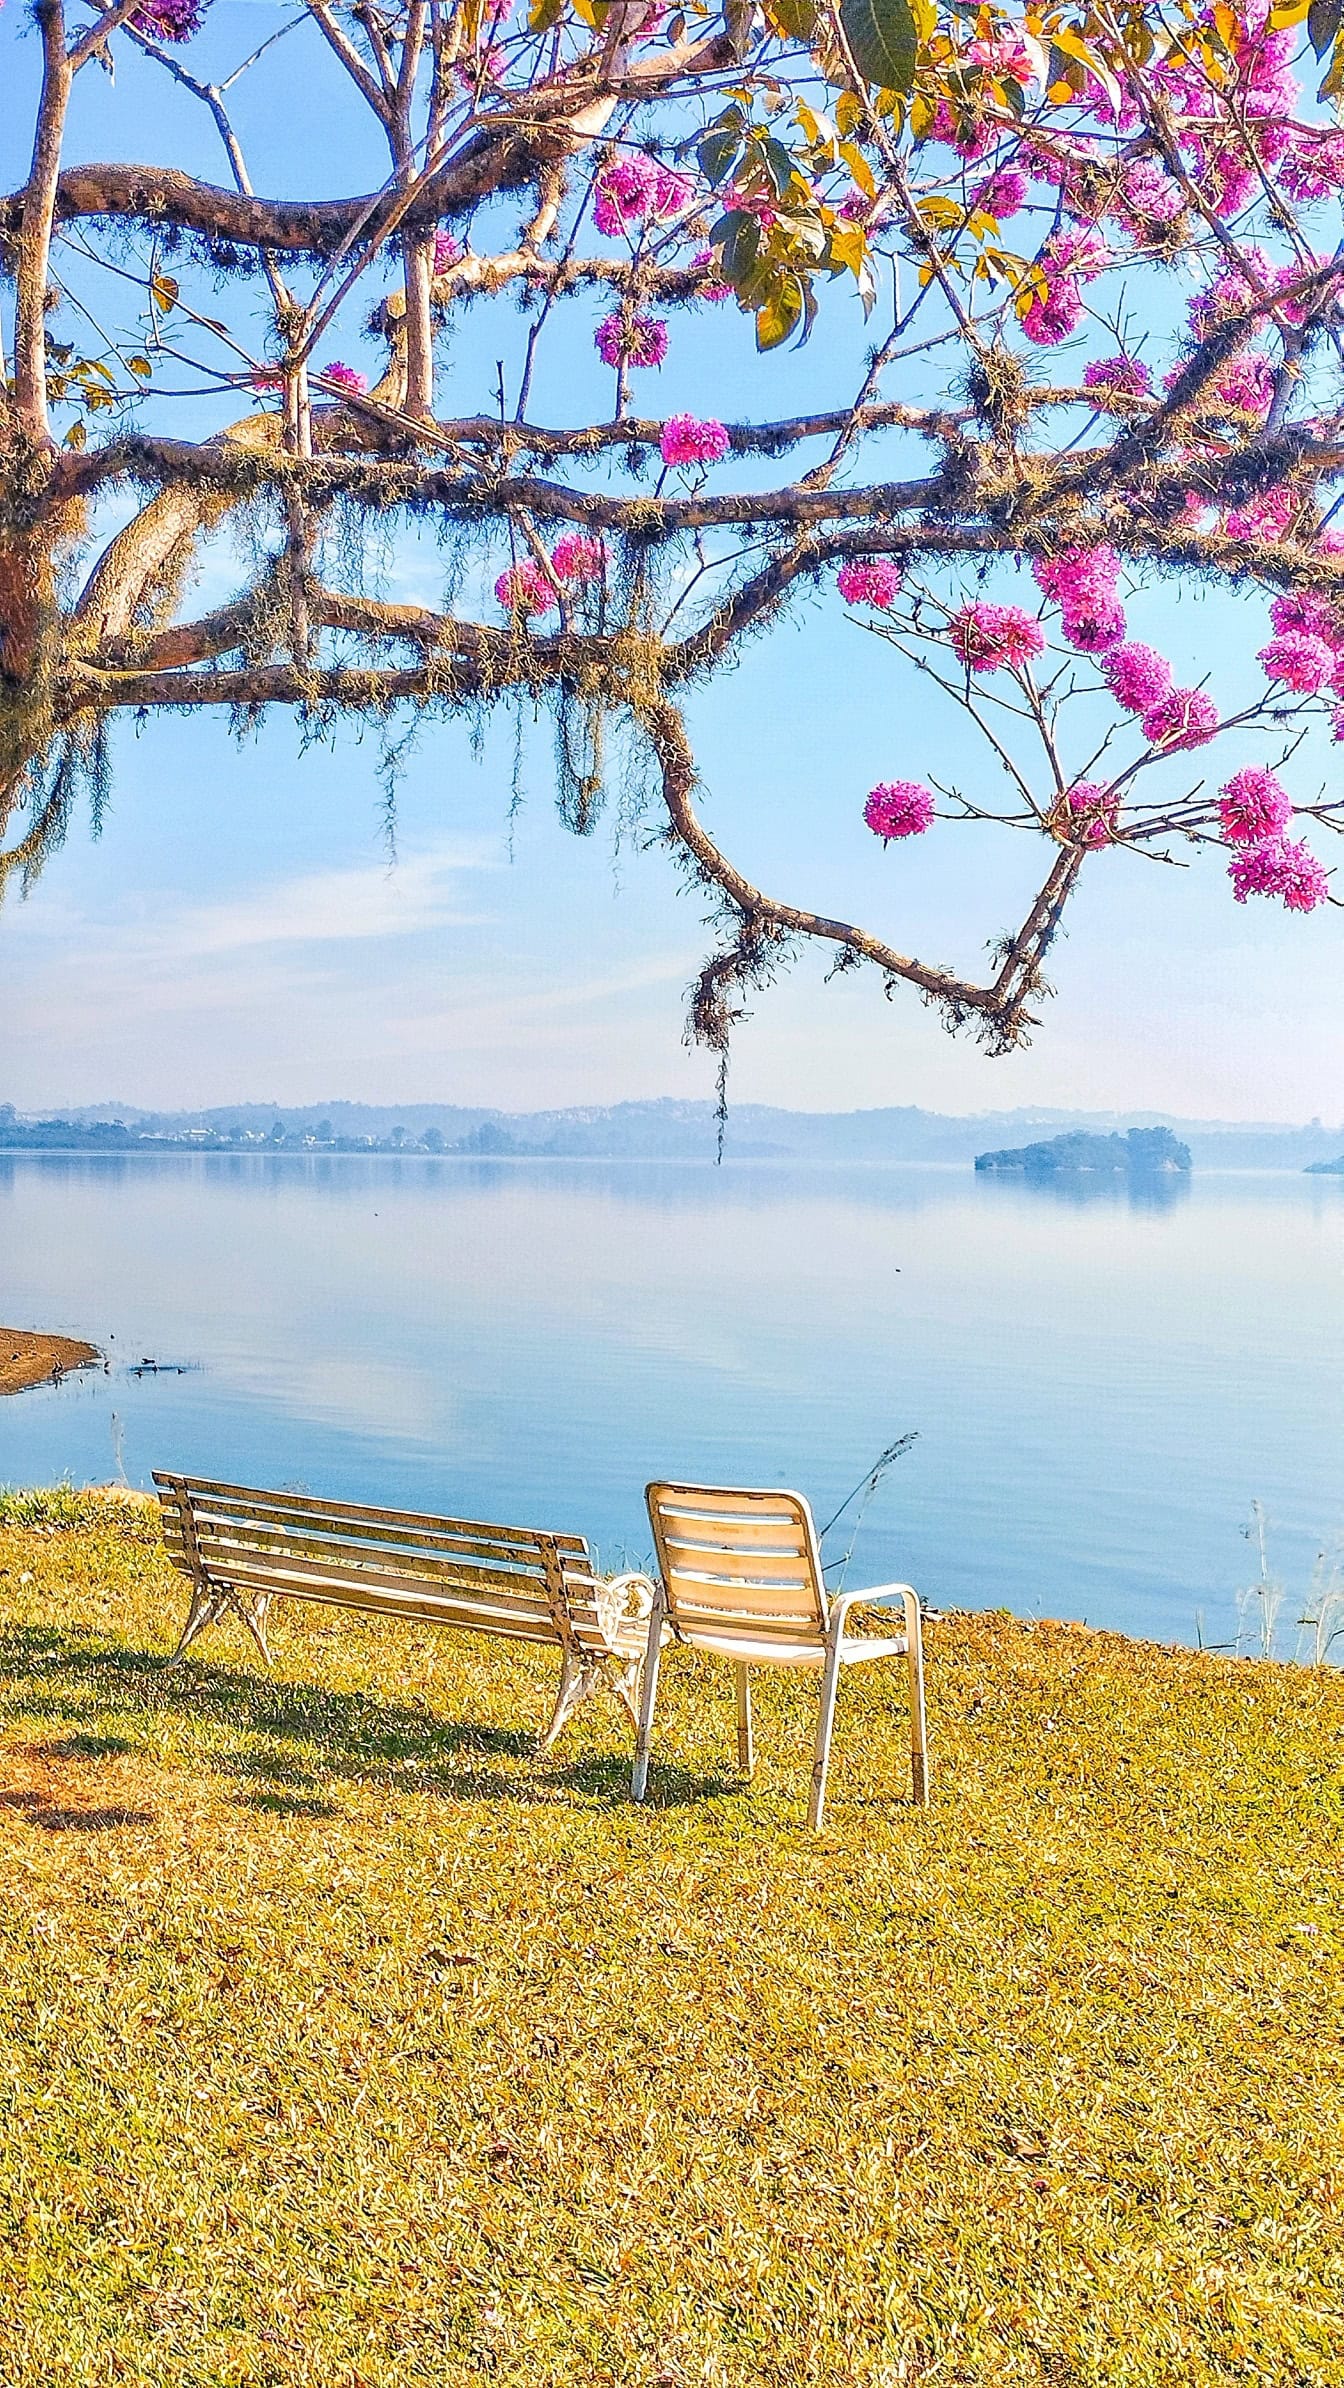 Băng ghế bên hồ bên dưới một cây tân nhiệt đới đang nở rộ được gọi là cây kèn hồng hoặc poui hồng (Tabebuia rosea)